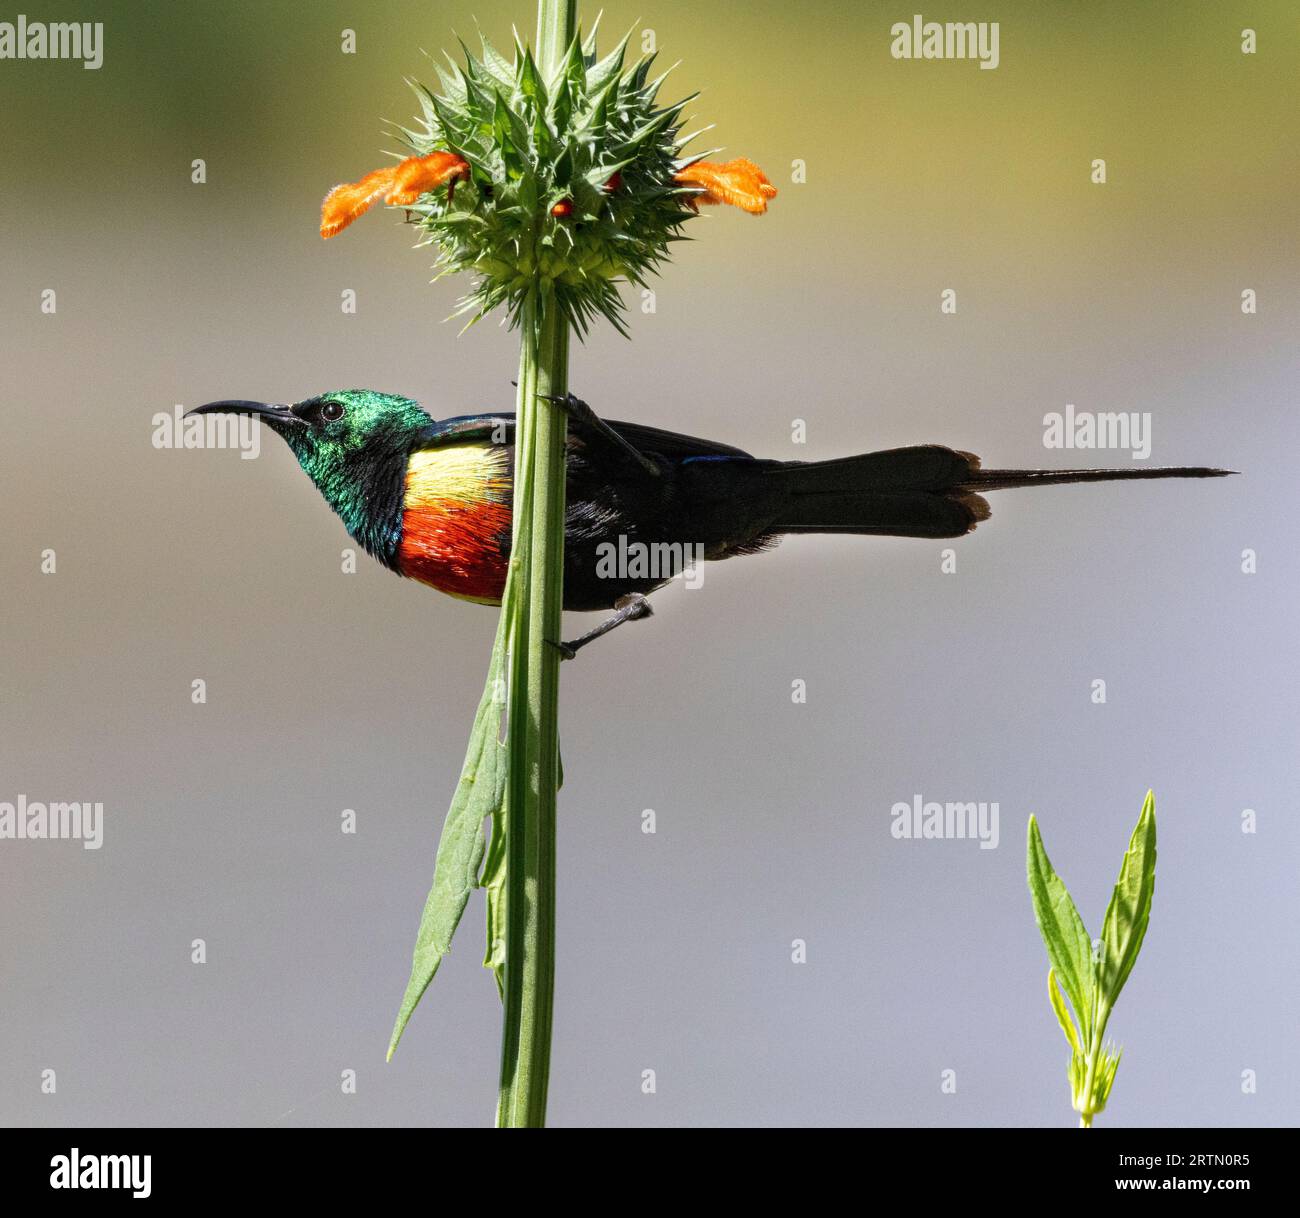 Der männliche schöne Sunbird hat eine auffällige Farbenpracht während der Brutsaison. Die metallische Iridierung wird durch Lichtbrechung erzeugt. Stockfoto